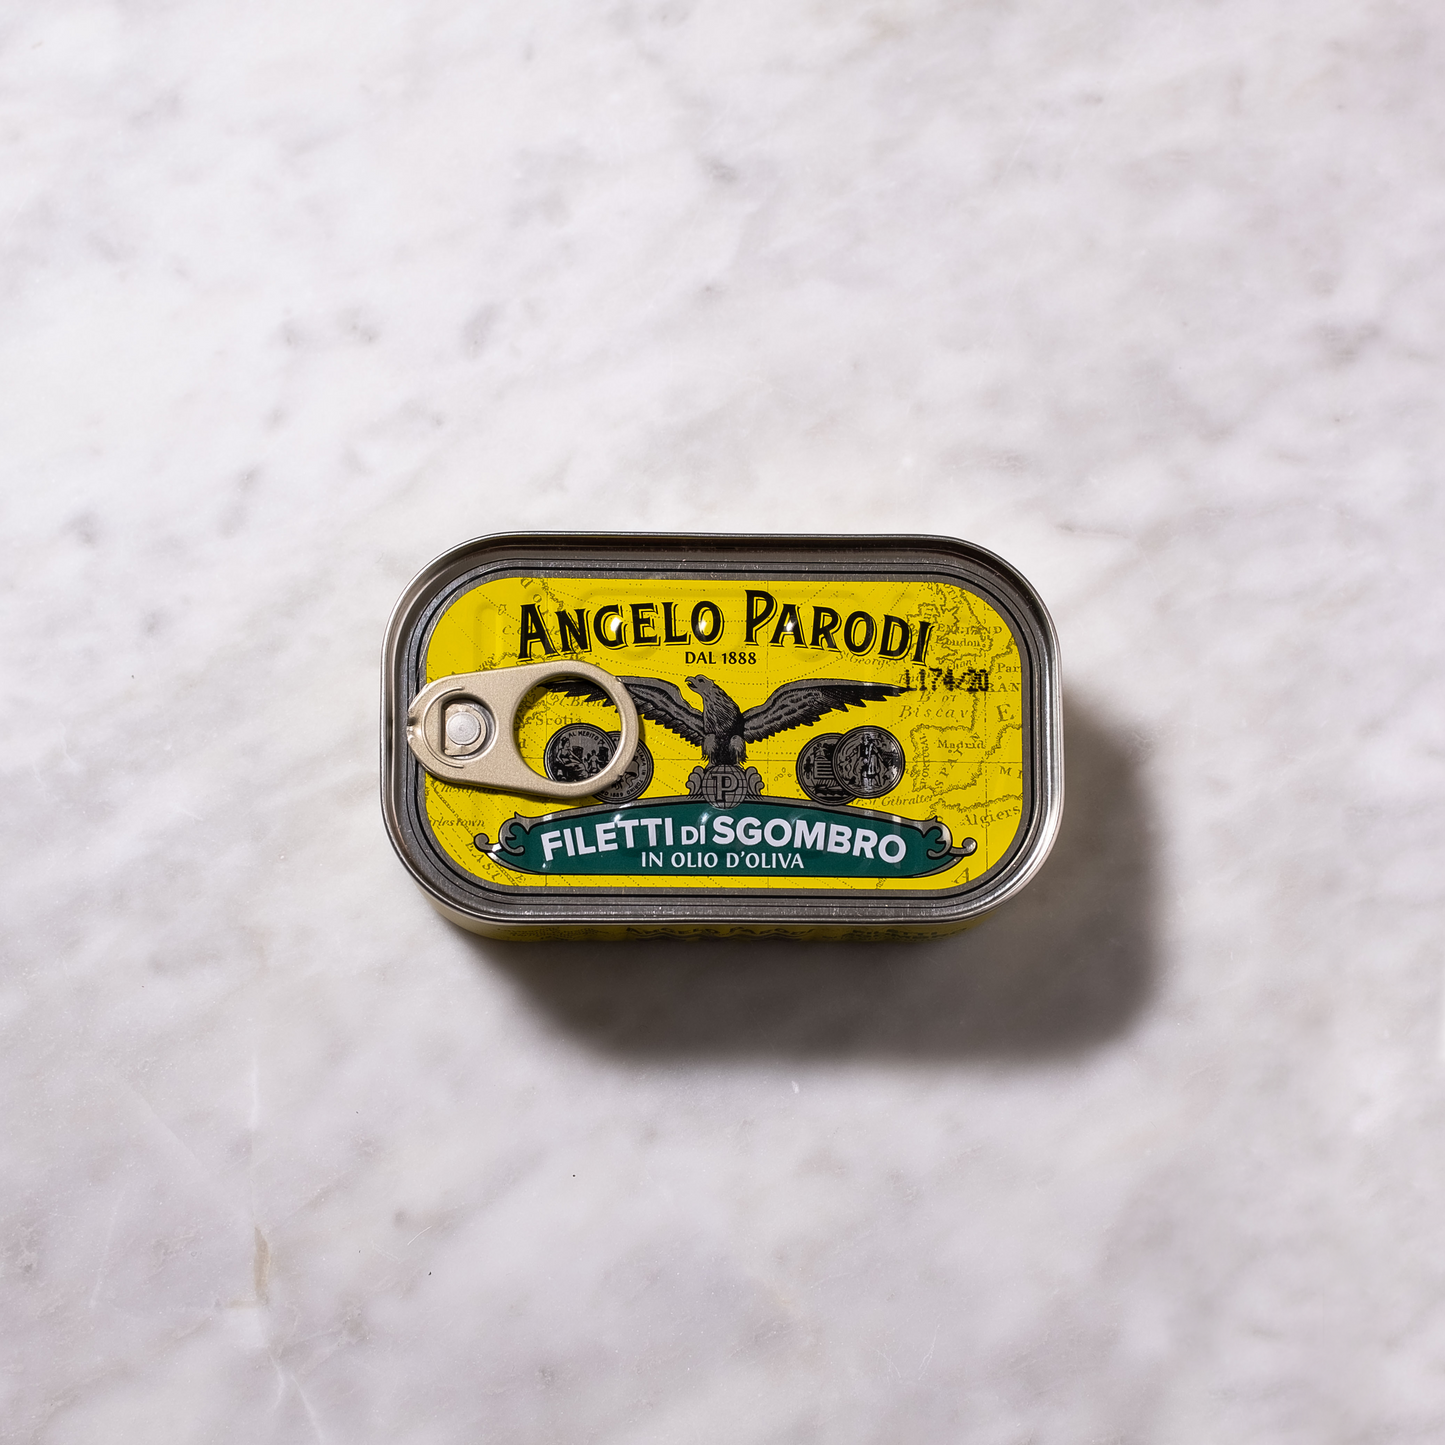 Angelo Parodi Mackerel Fillets in olive oil 125g